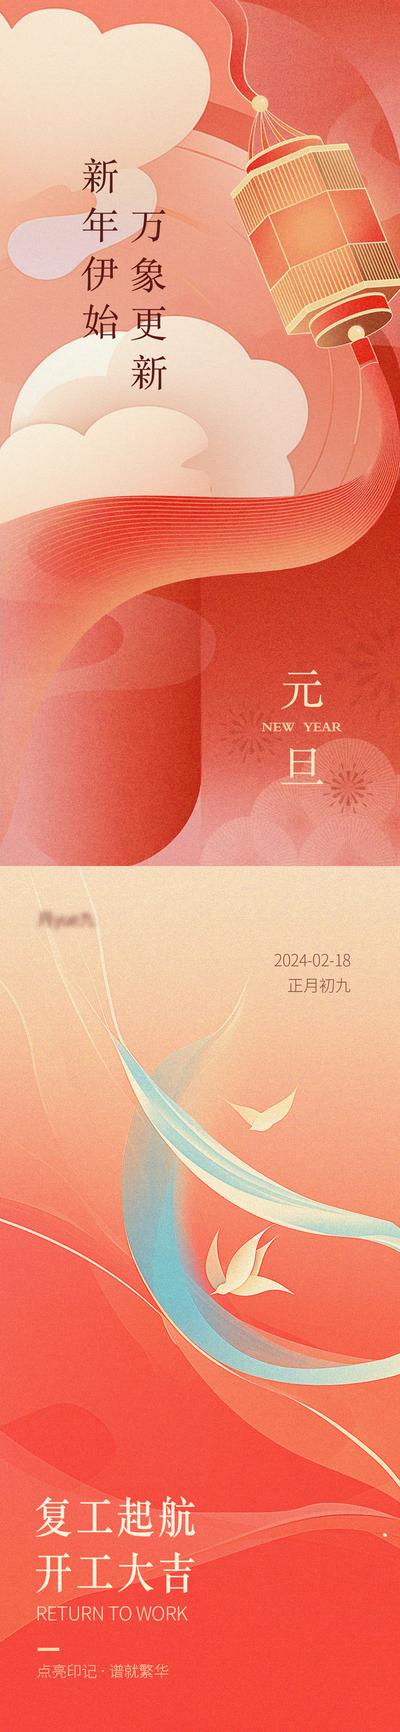 南门网 海报 公历节日 中国传统节日 龙年 新年 开工 喜庆 系列